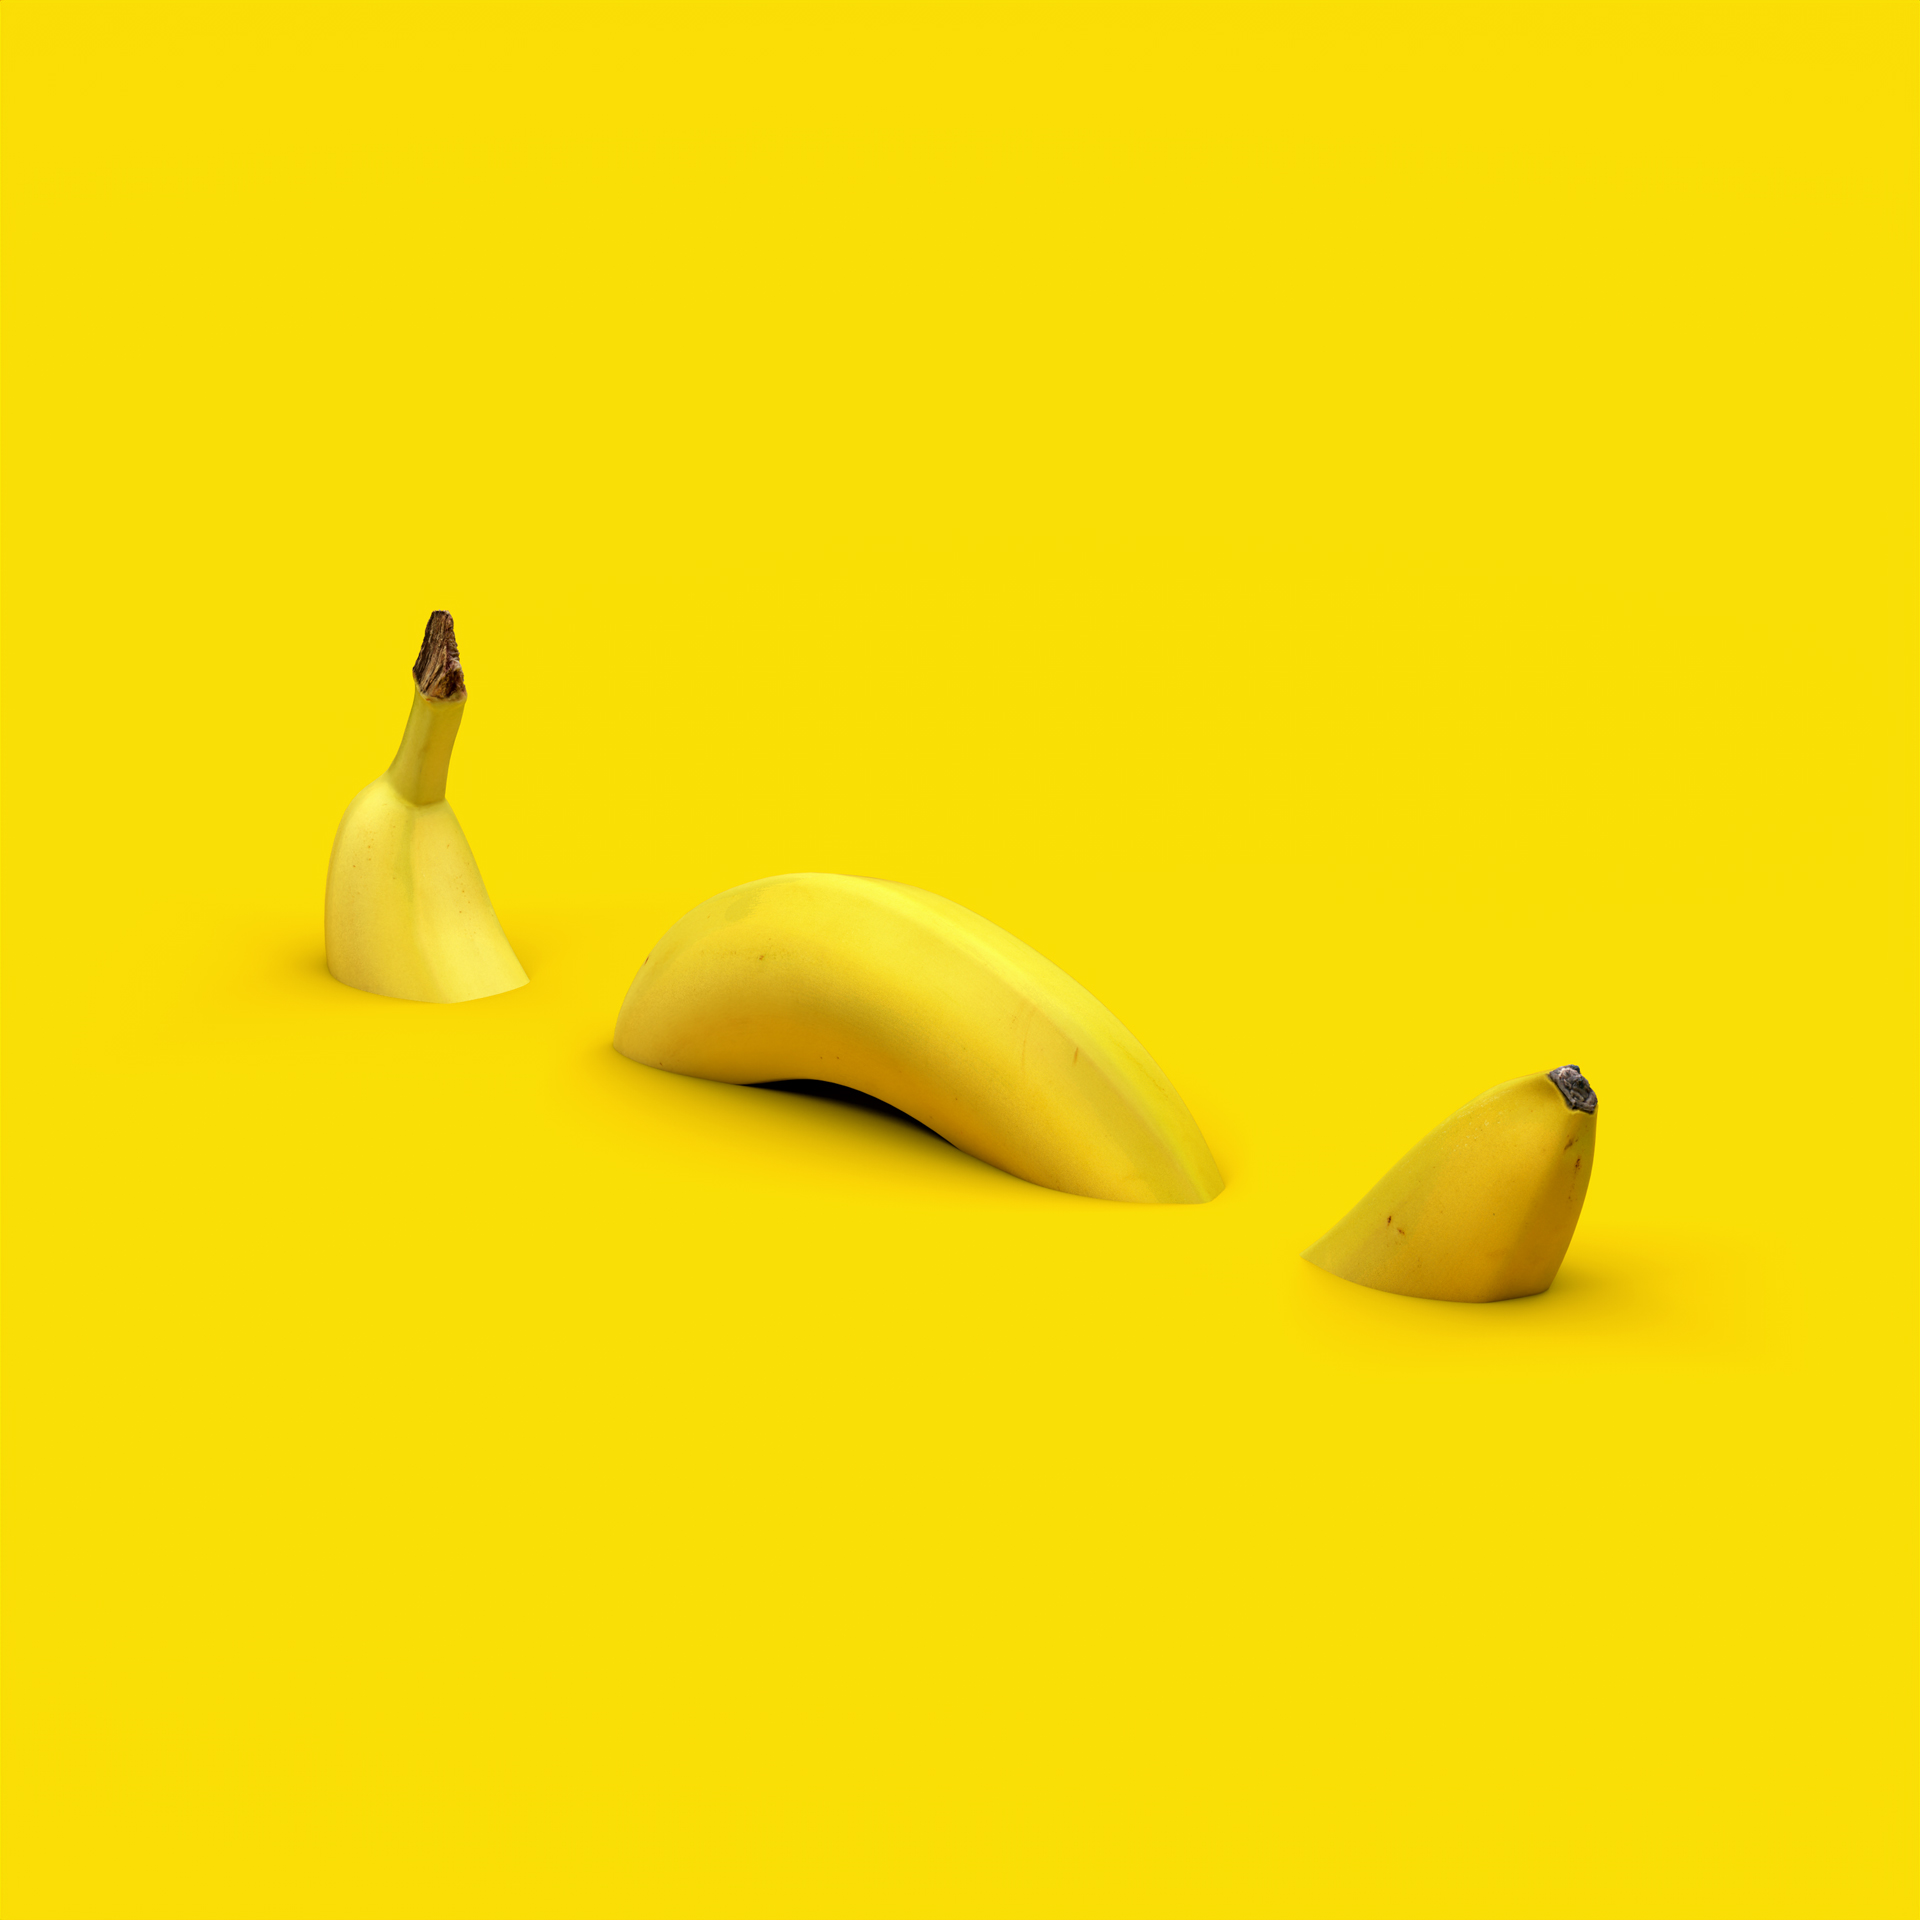 Bananaconda by Christophe Vogels in Brussels, Belgium